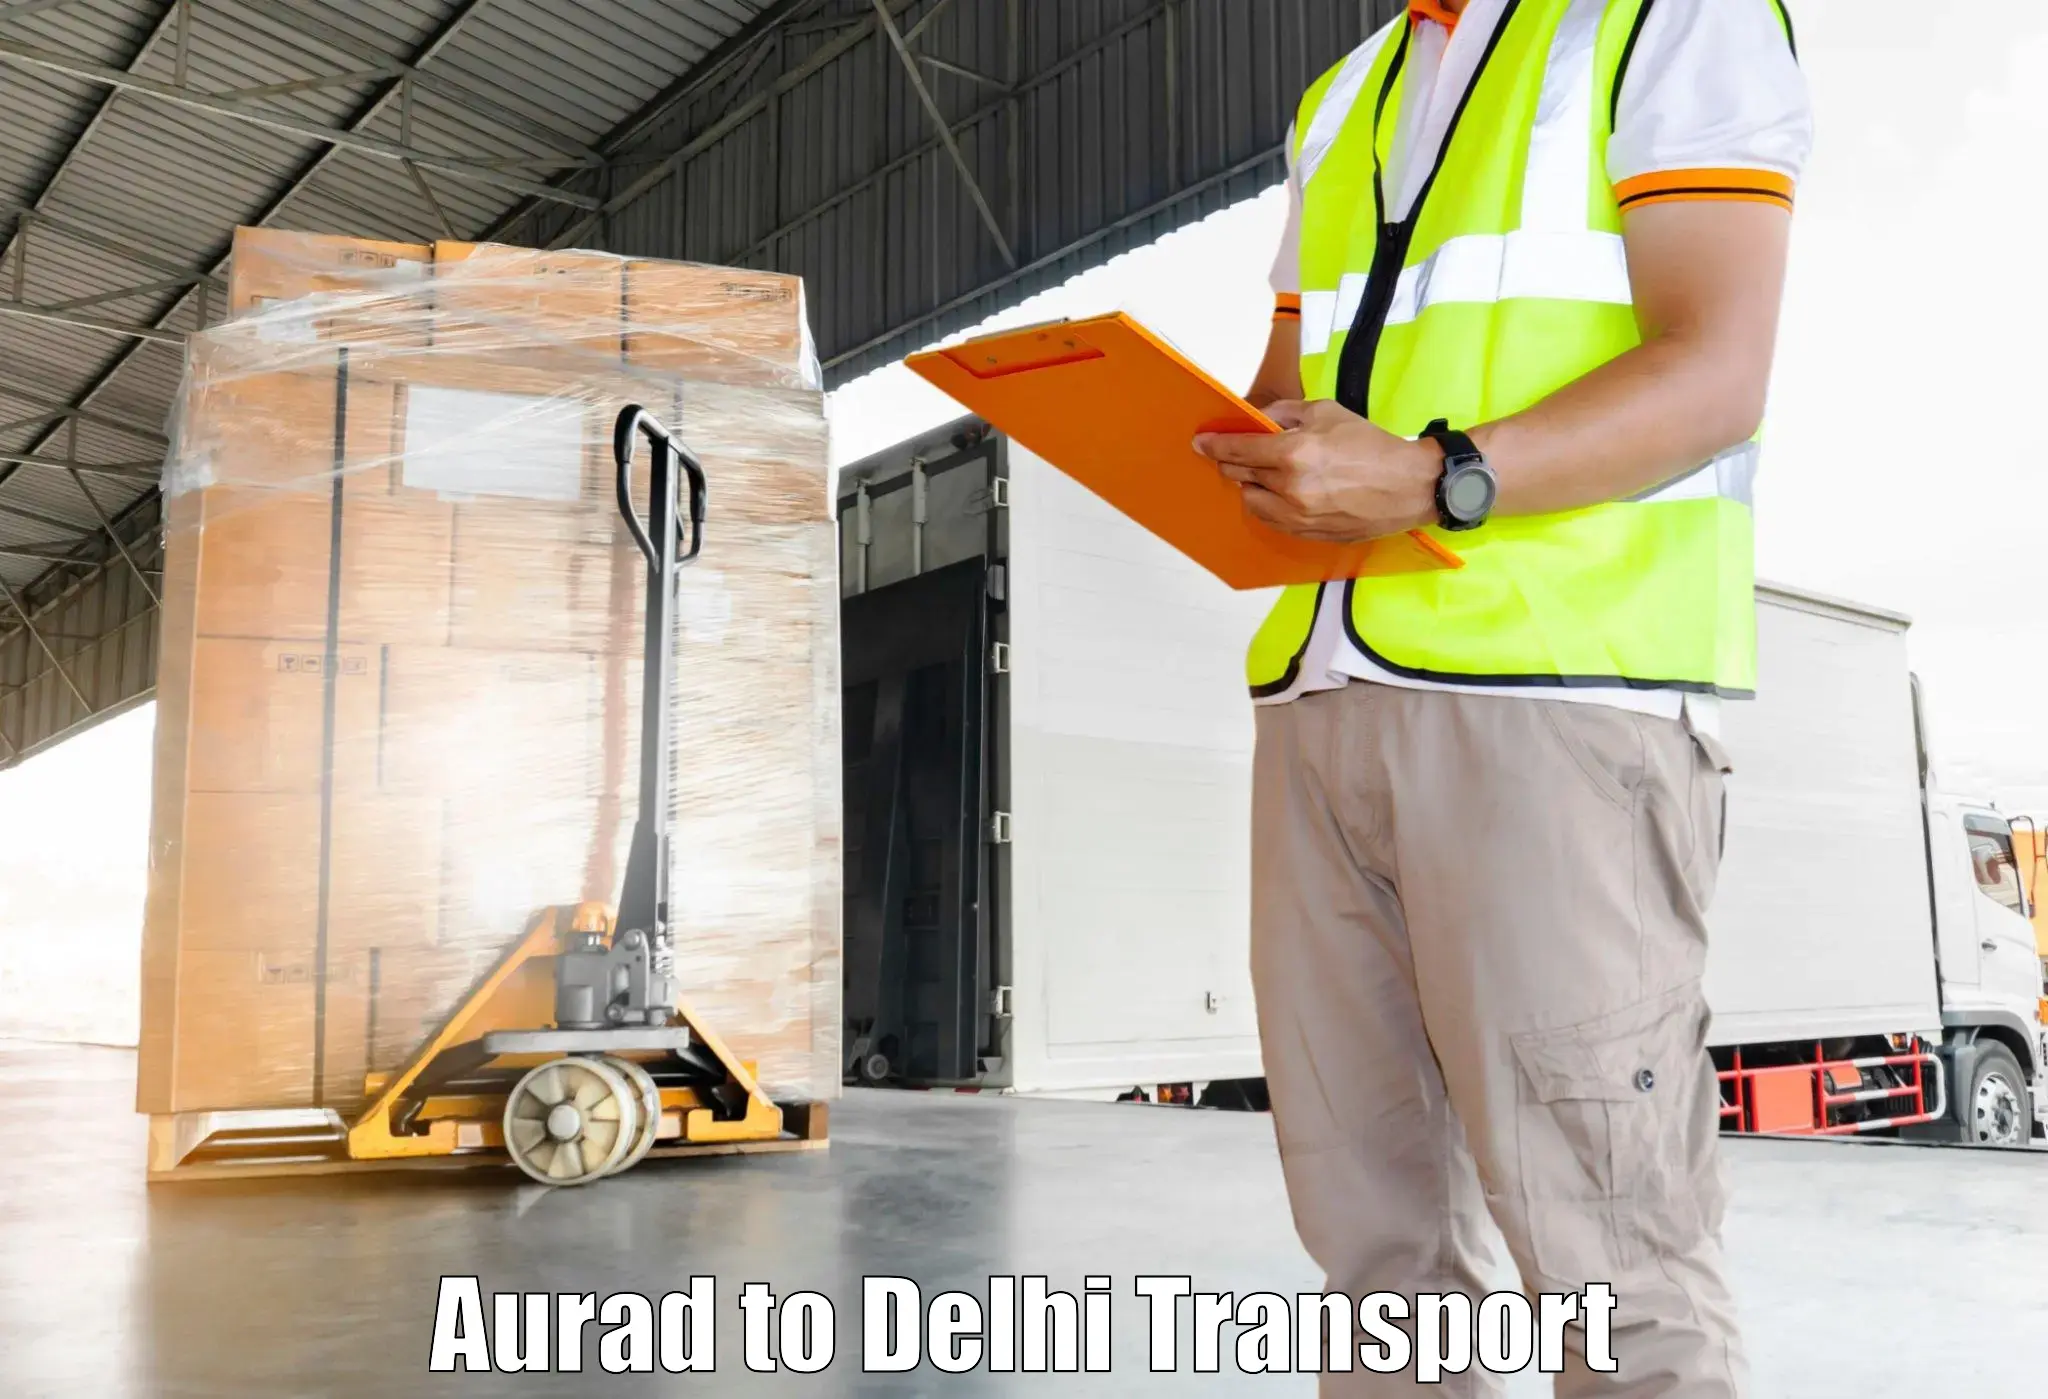 Delivery service Aurad to Delhi